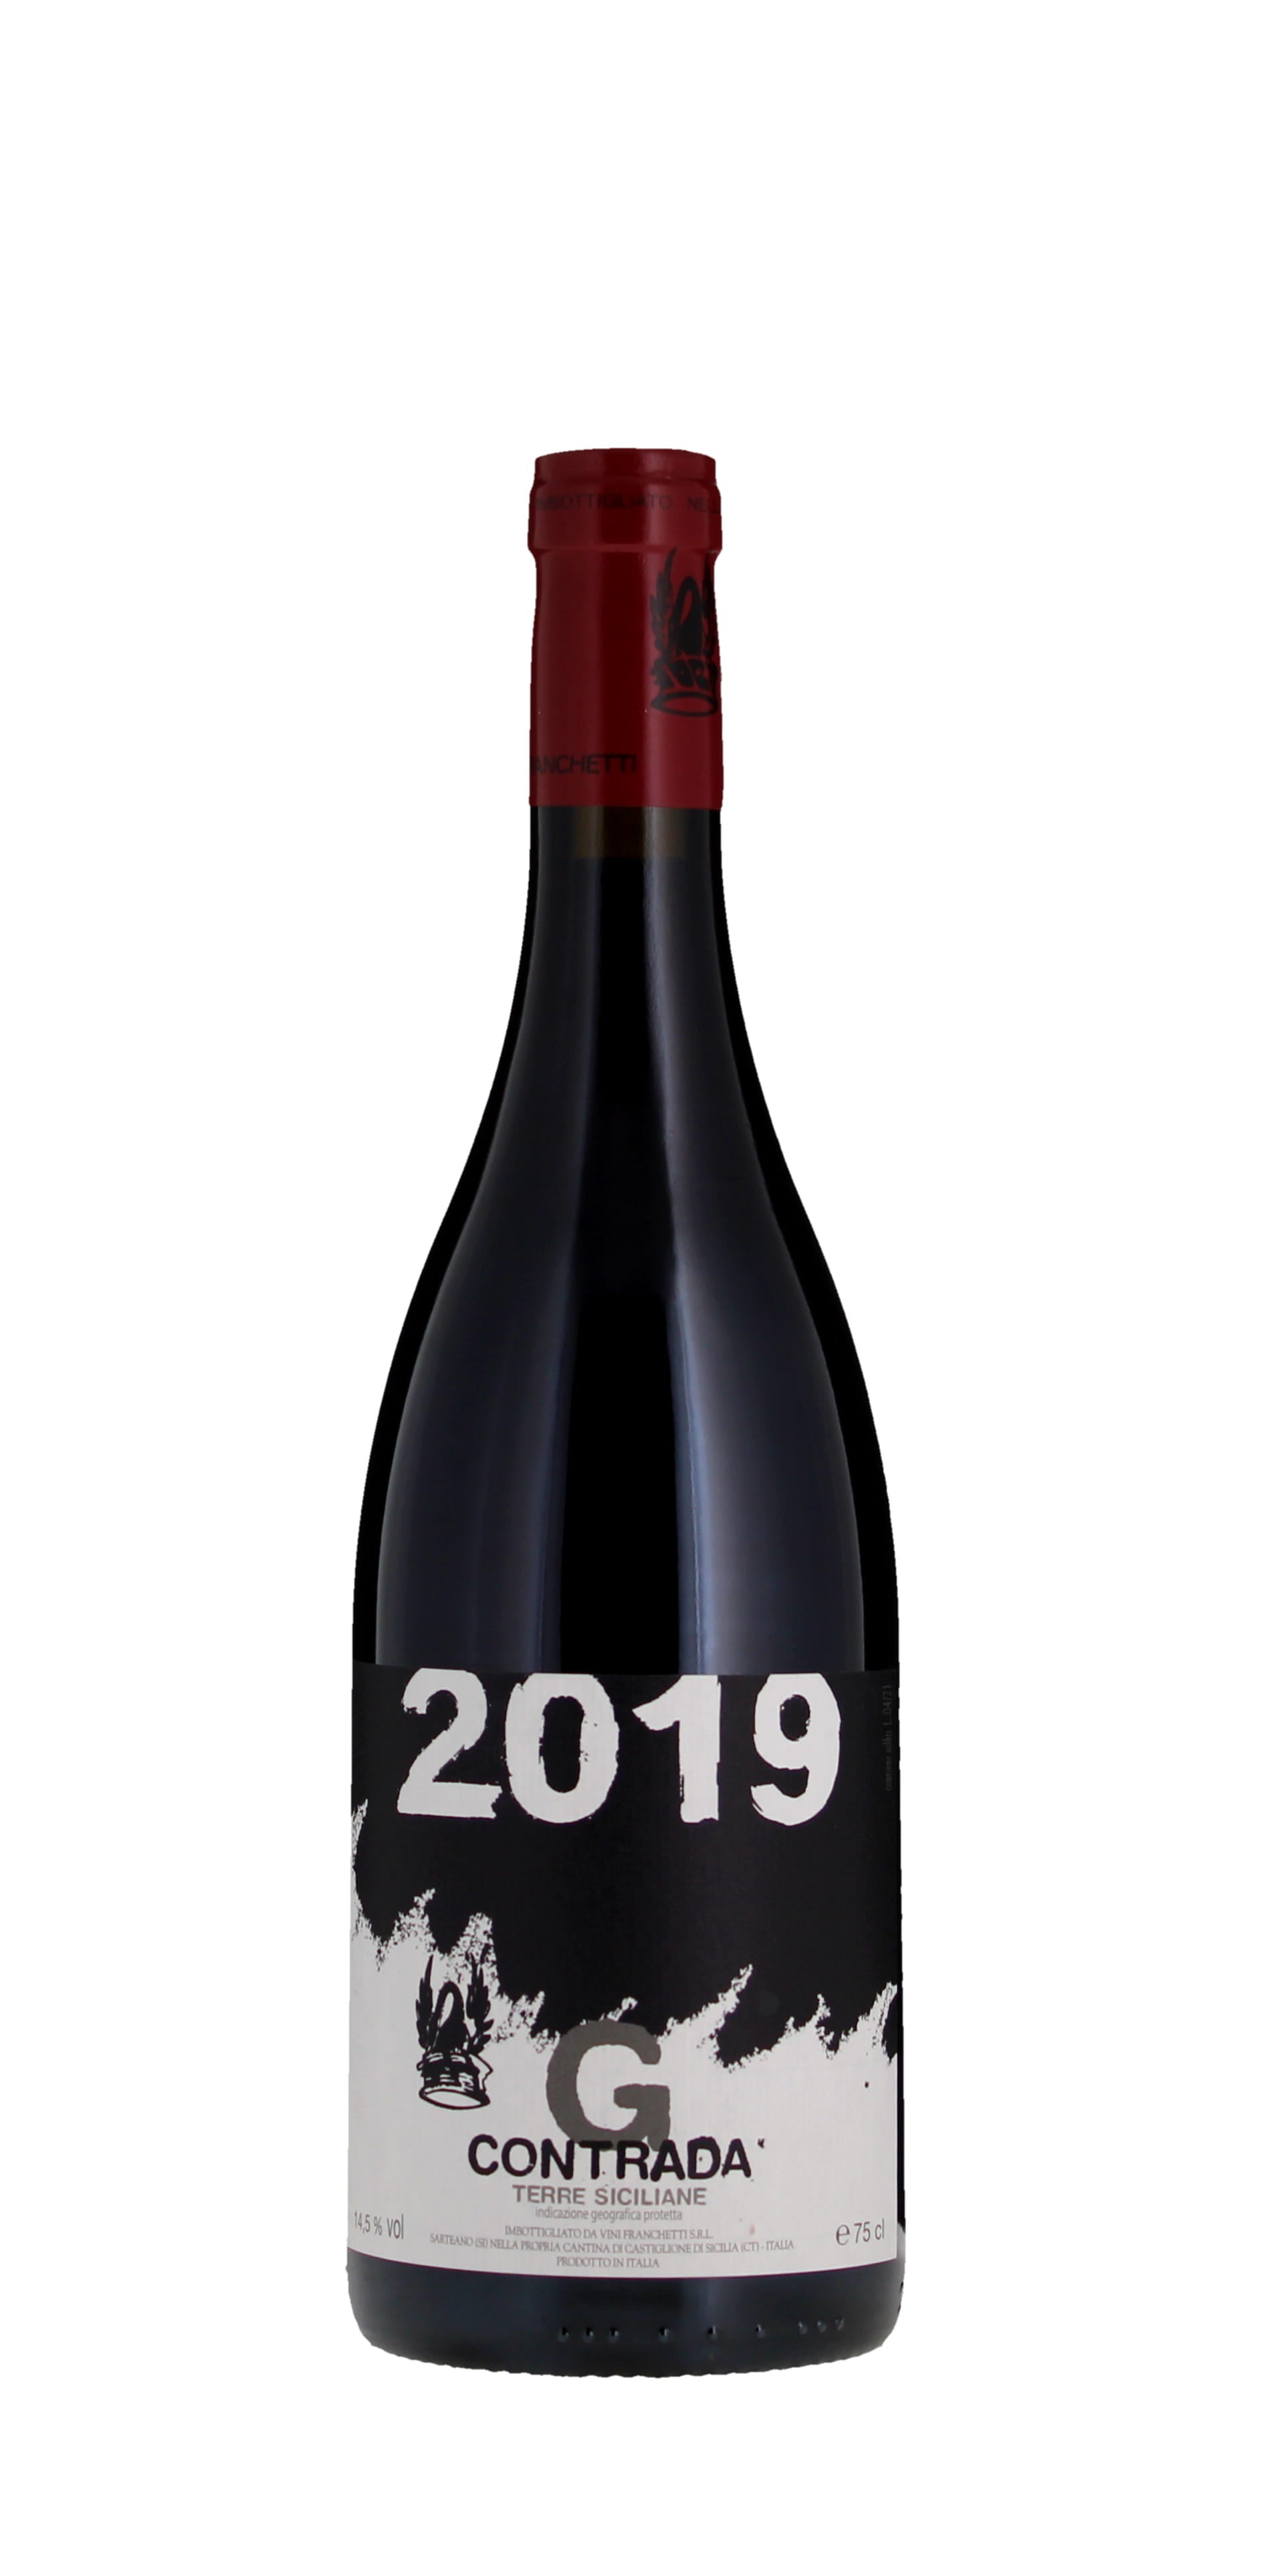 Guardiola IGT G & Passopisciaro Siciliane - Salusbury Contrada Terre Rosso Bar 2019 Winestore